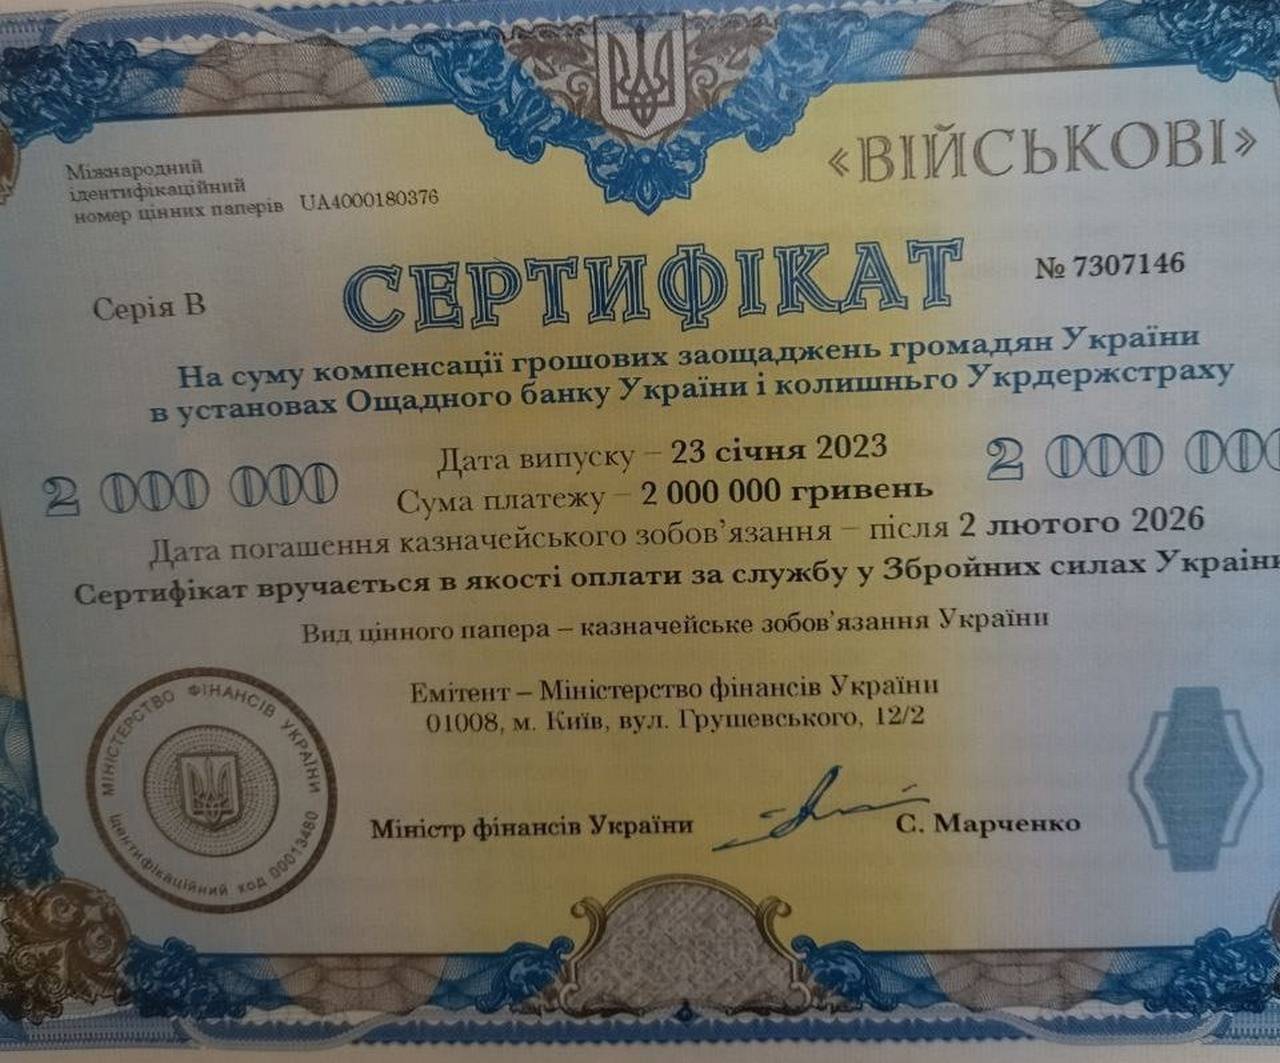 Ukrajinská armáda rozdává certifikáty s vyplacením za 3 roky místo hřivny v hotovosti